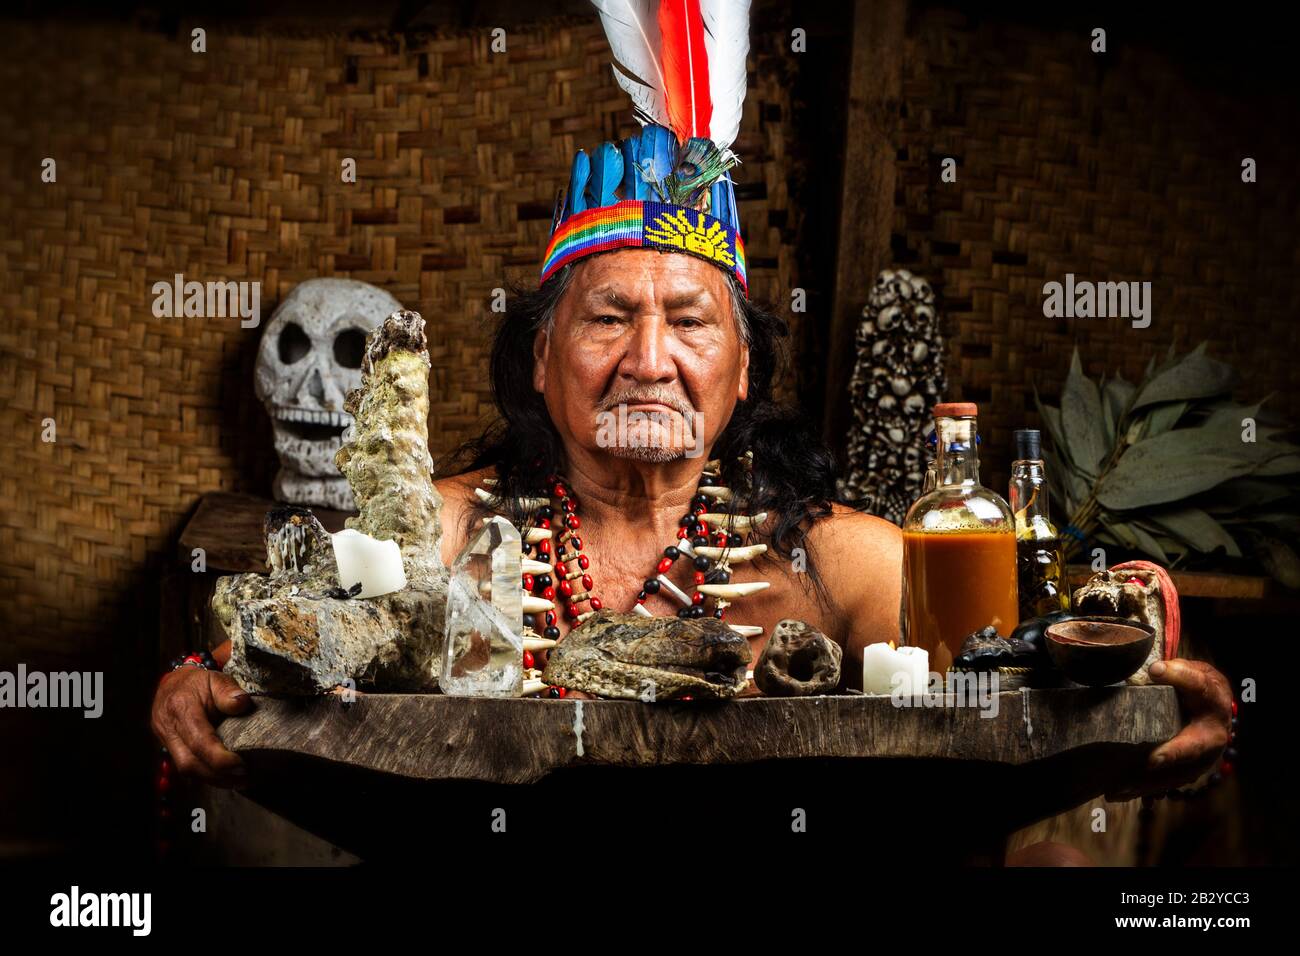 Shaman In Amazzonia Ecuadoriana Durante Un Reale Ayahuasca Ritual Model Rilasciato Immagine Come Visto In Aprile 2015 Foto Stock